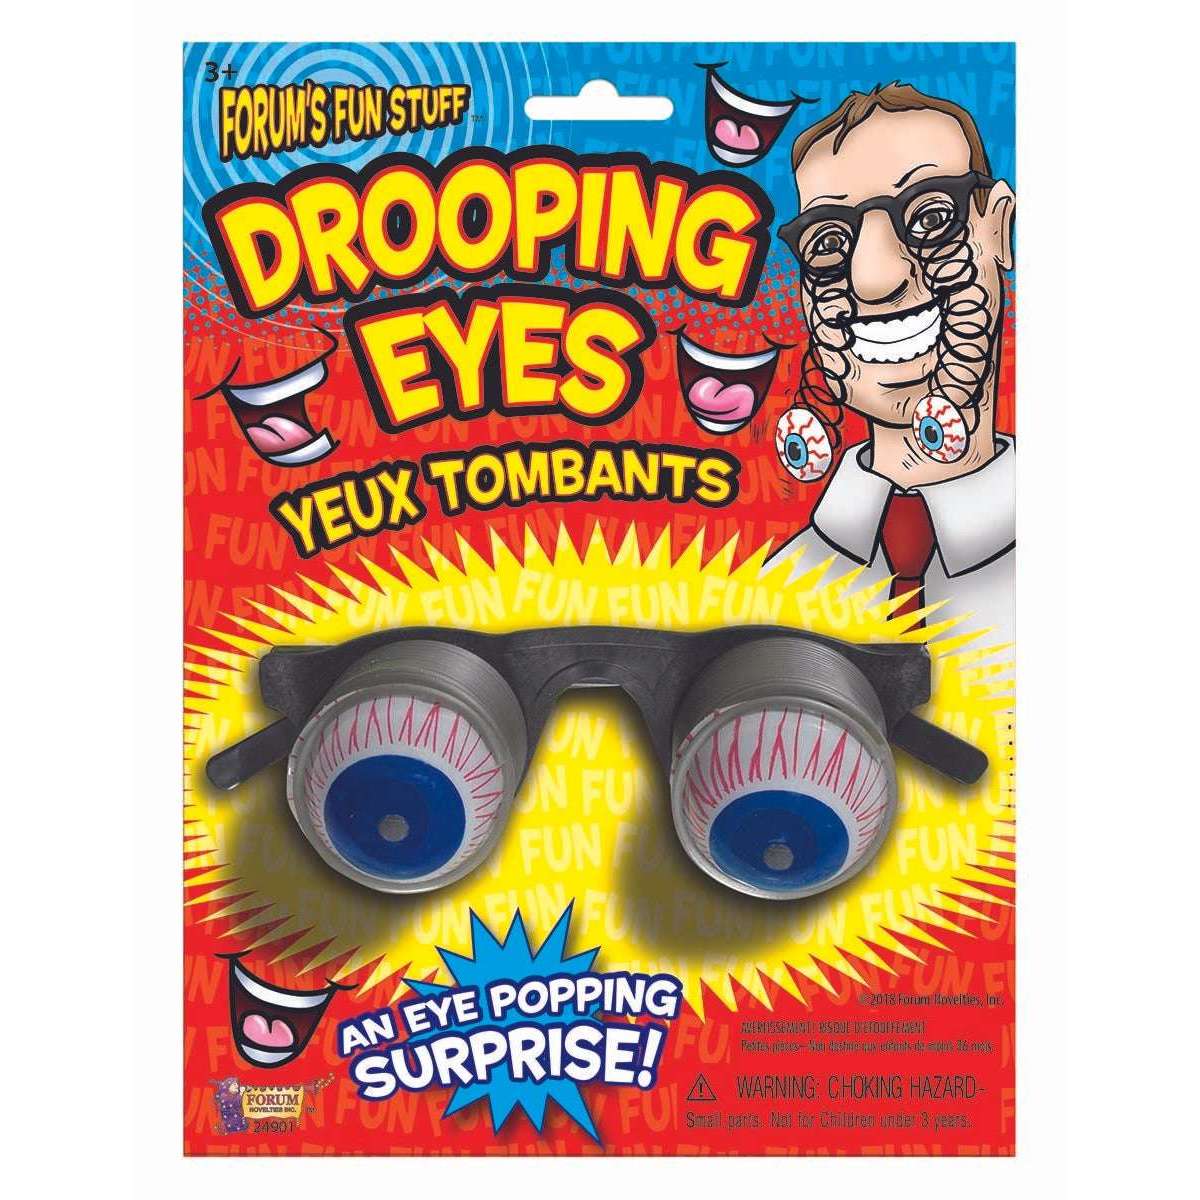 Drooping Eye Glasses